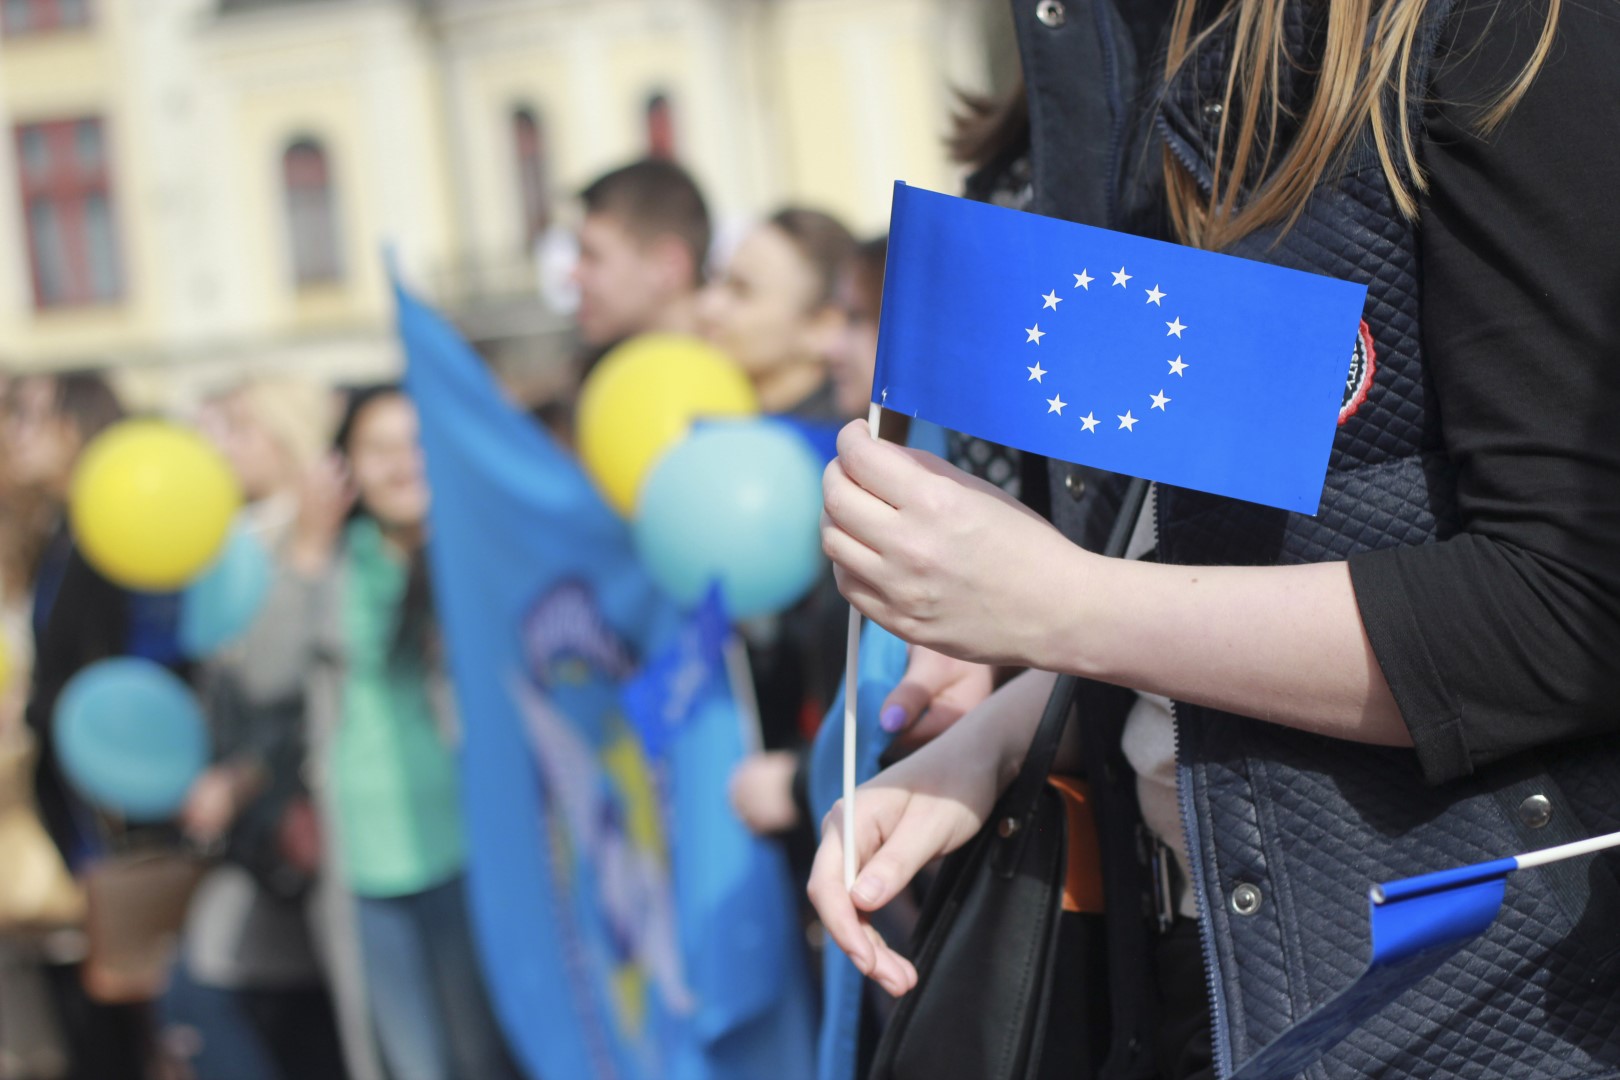 14 Mart'ta Gerçekleşecek 'Gençler Geleceğine AB ile Yön Veriyor' Seminerine Katılarak Avrupa'da Eğitim Fırsatlarını Öğrenebilirsiniz